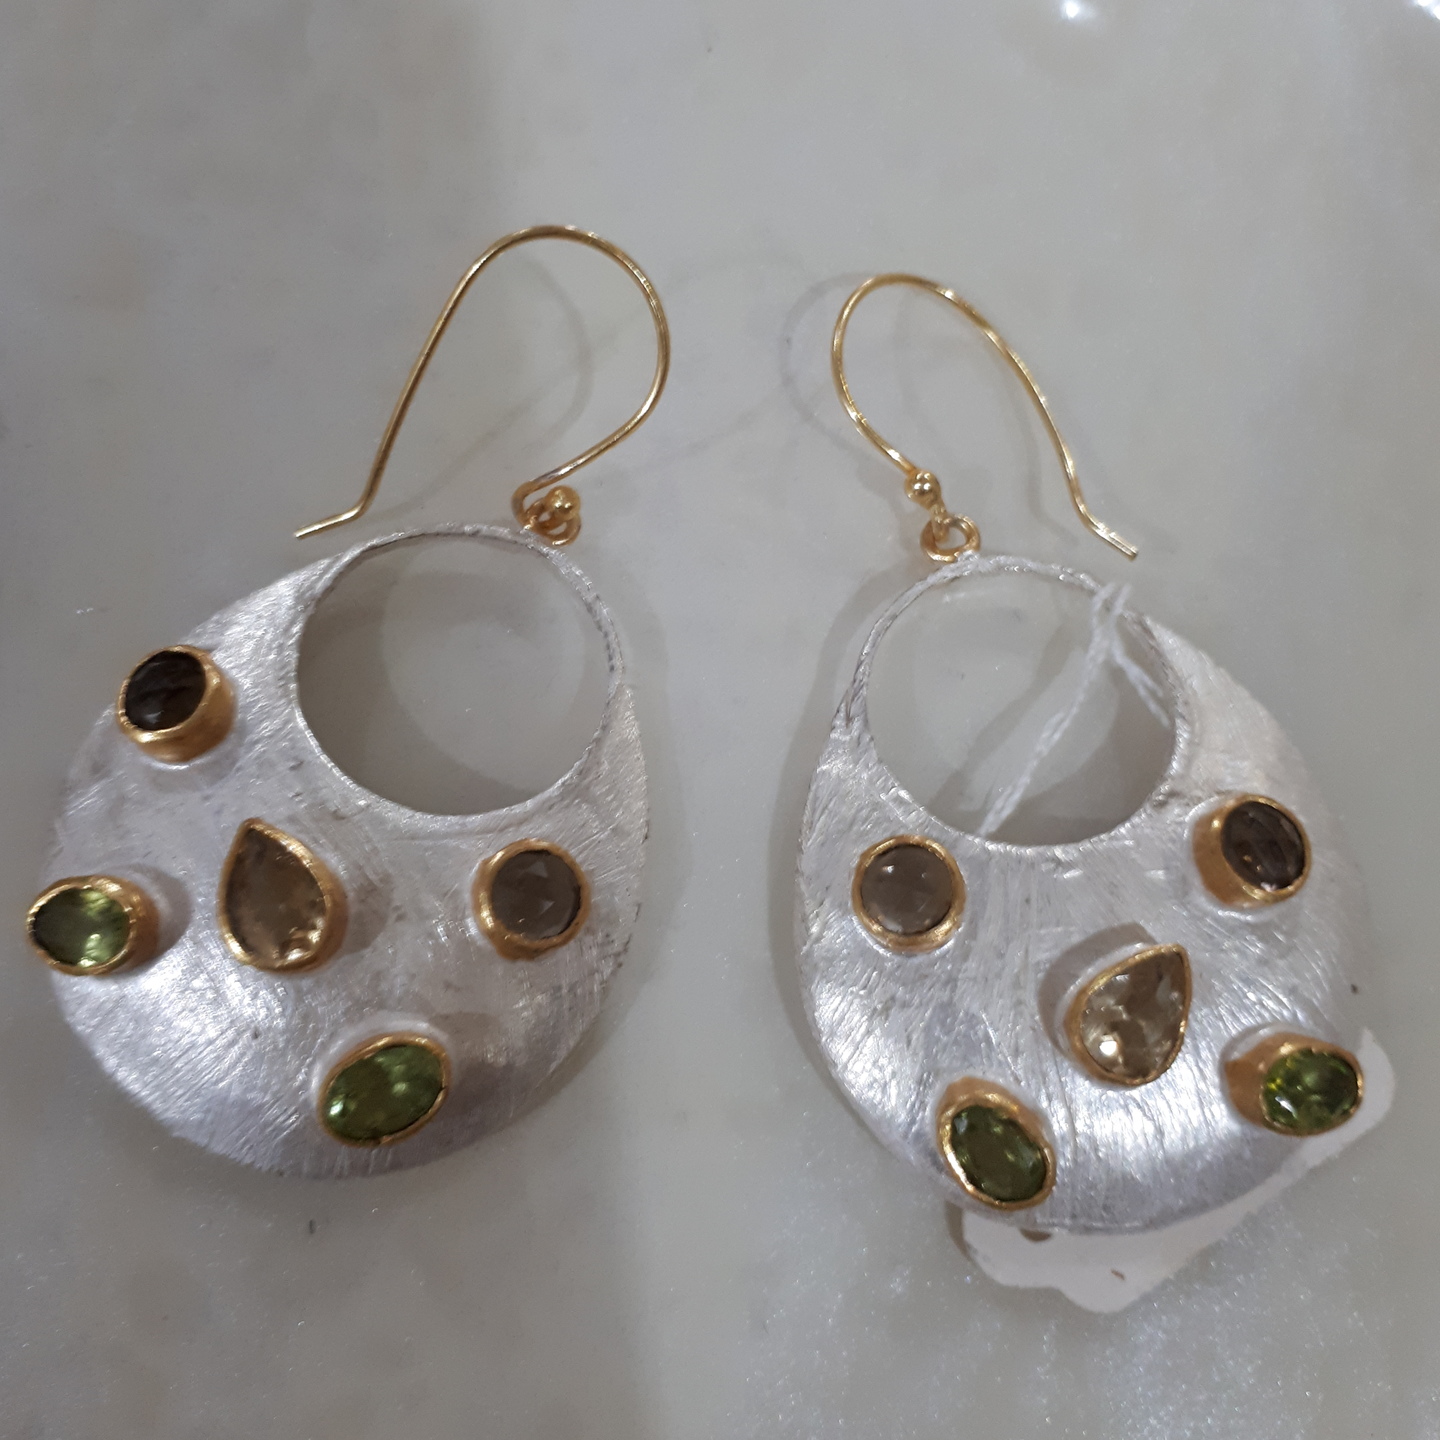 Jasper and emerald earrings